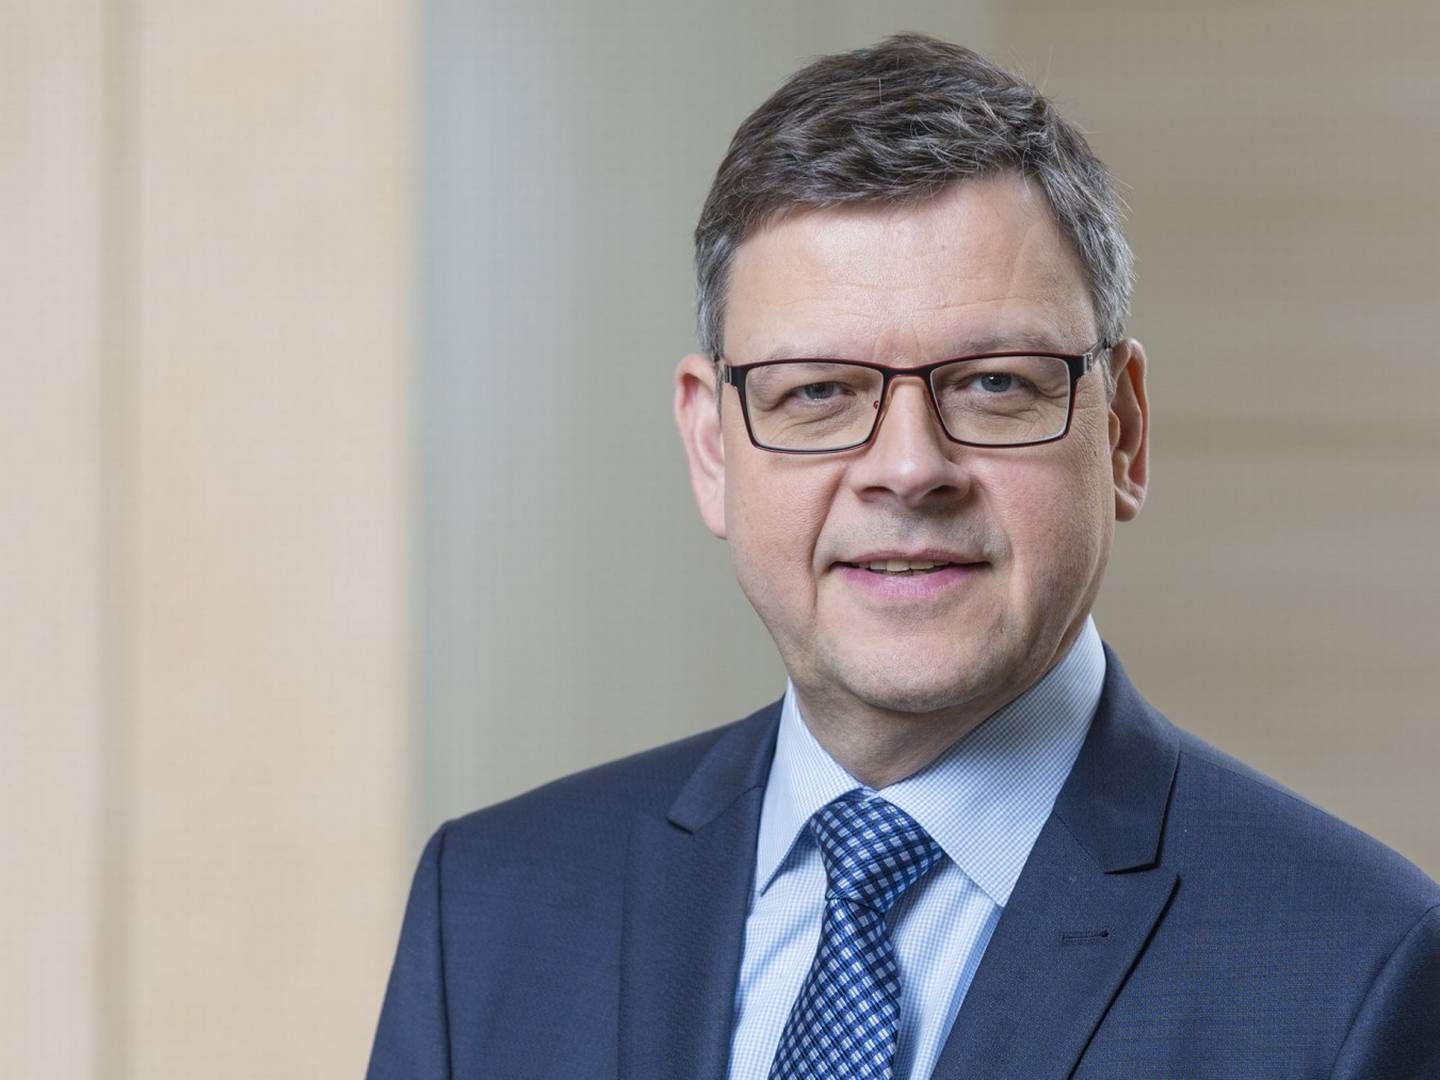 Thorsten Pötzsch, Exekutivdirektor Abwicklung der BaFin | Foto: Bernd Roselieb / BaFin